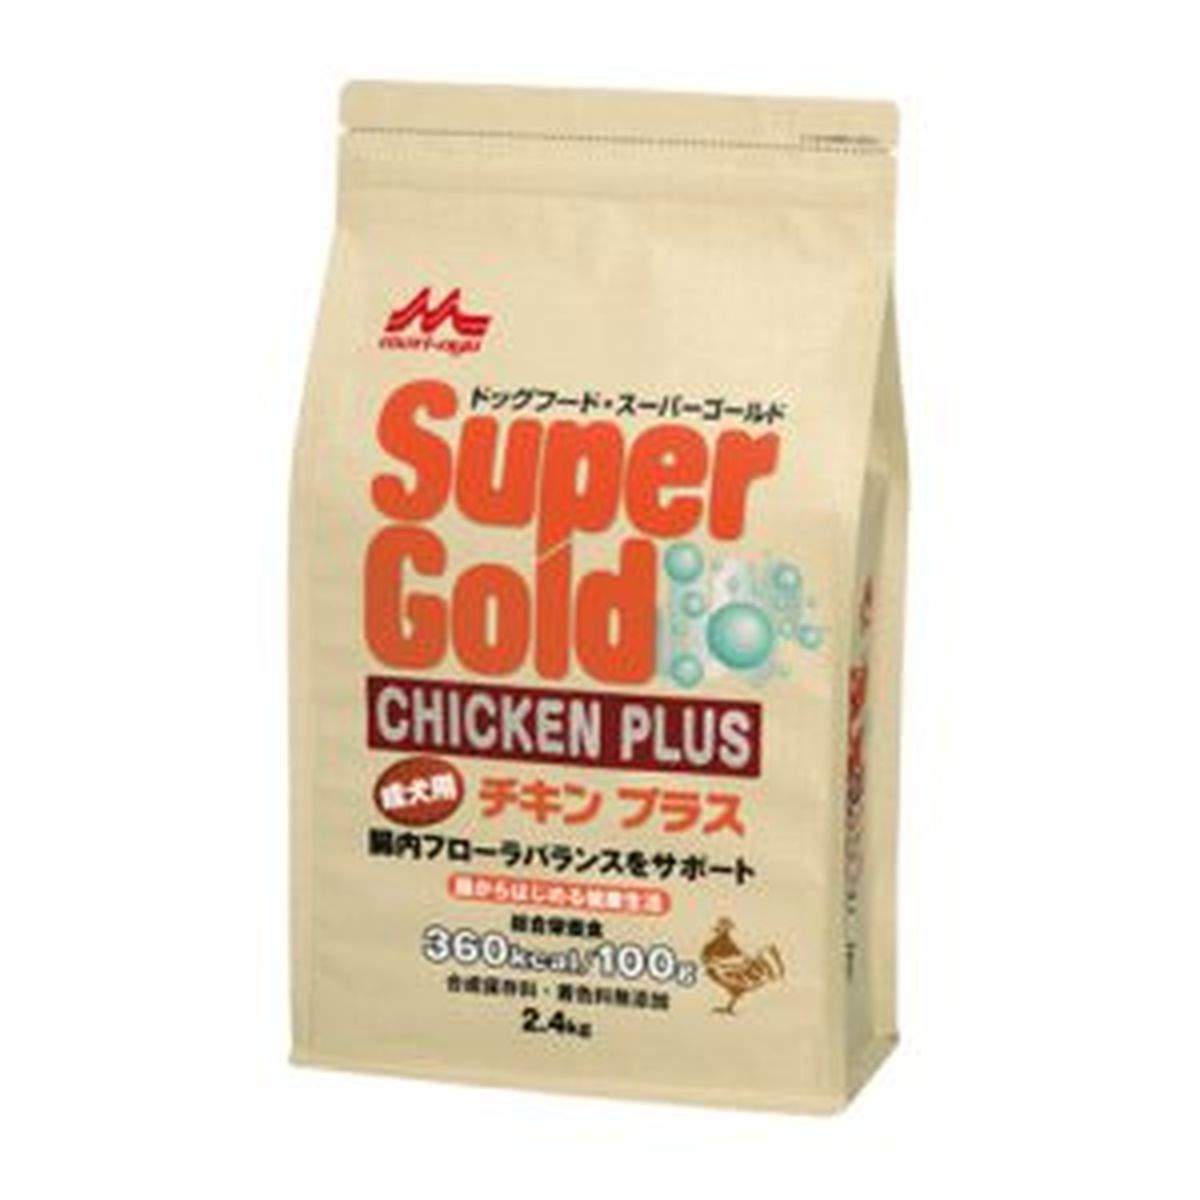 スーパーゴールド チキンプラス 成犬用2.4kg×4袋